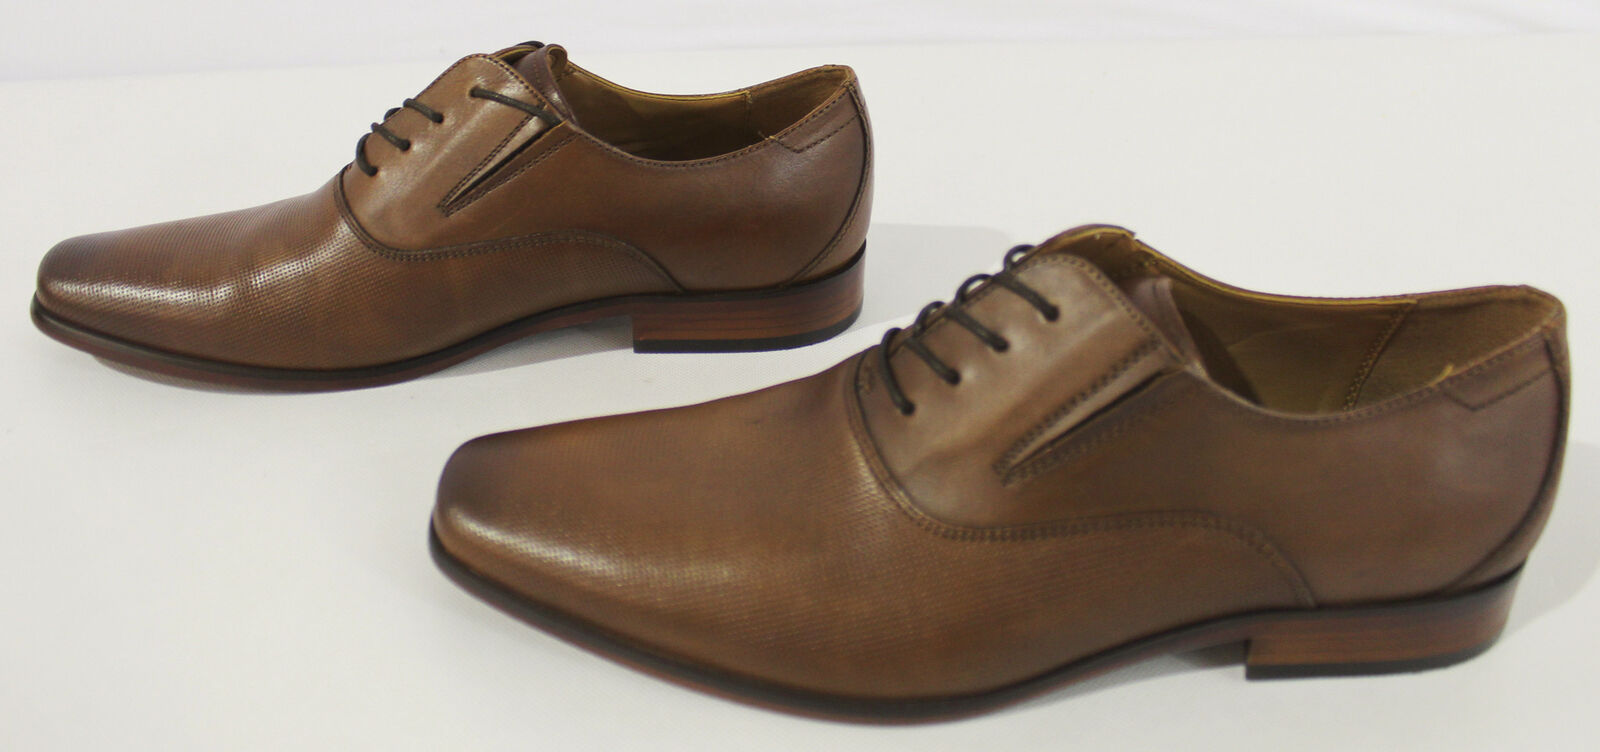 Aldo Men's Lace-Up Square Toe Leather Dress Shoes SC4 Brown Size US:9.5 UK:8.5